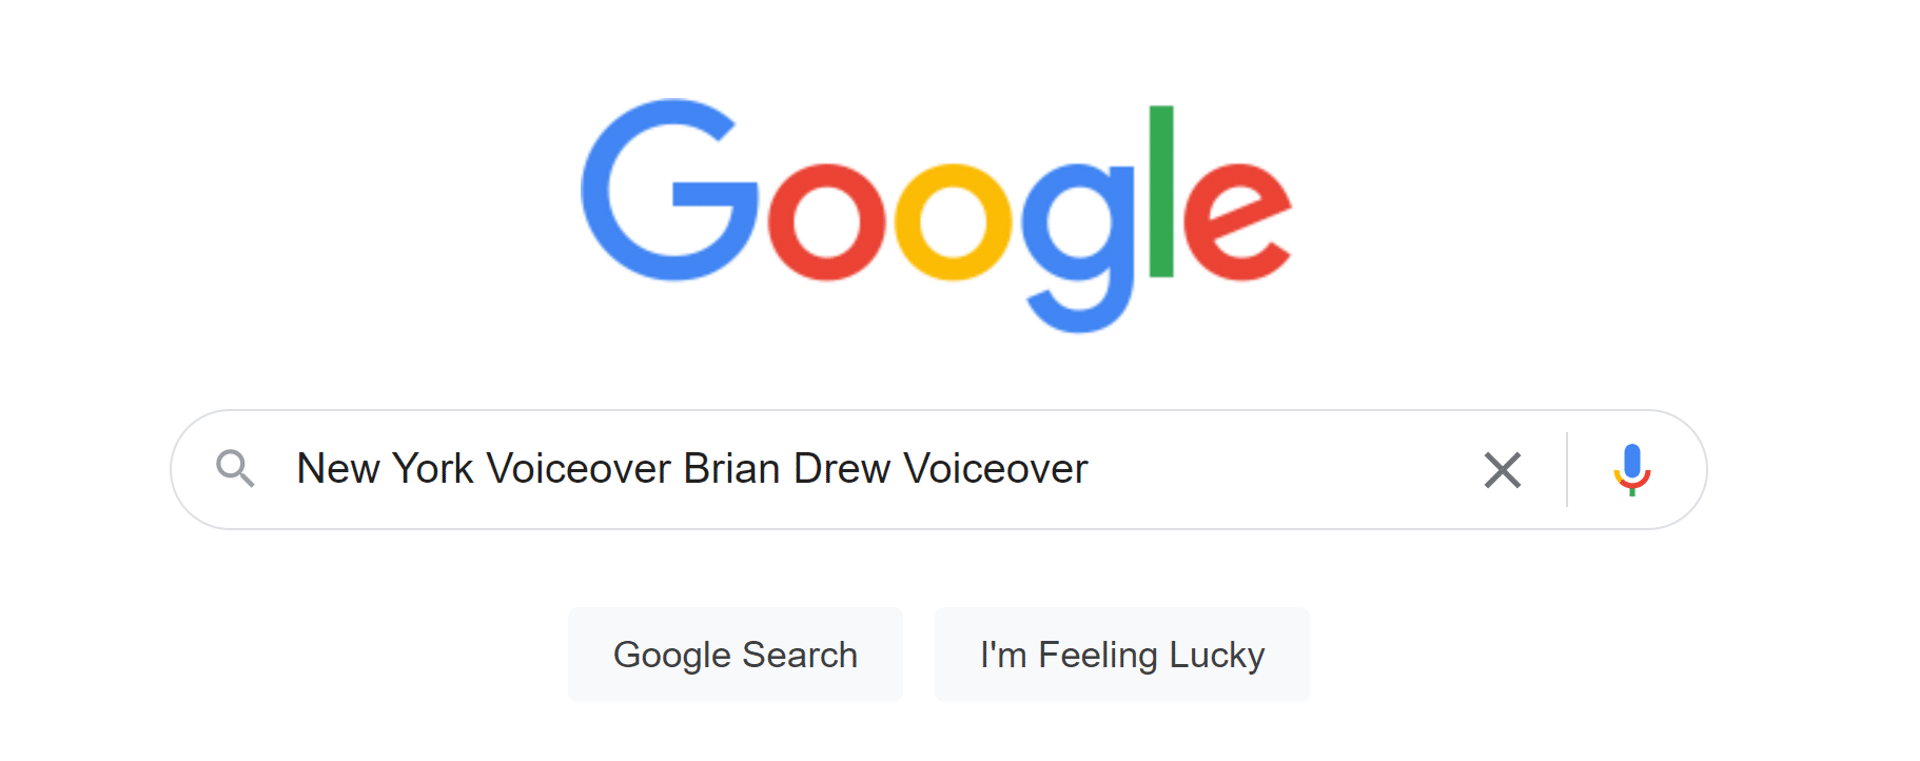 Google New York Voiceover Brian Drew Voiceover